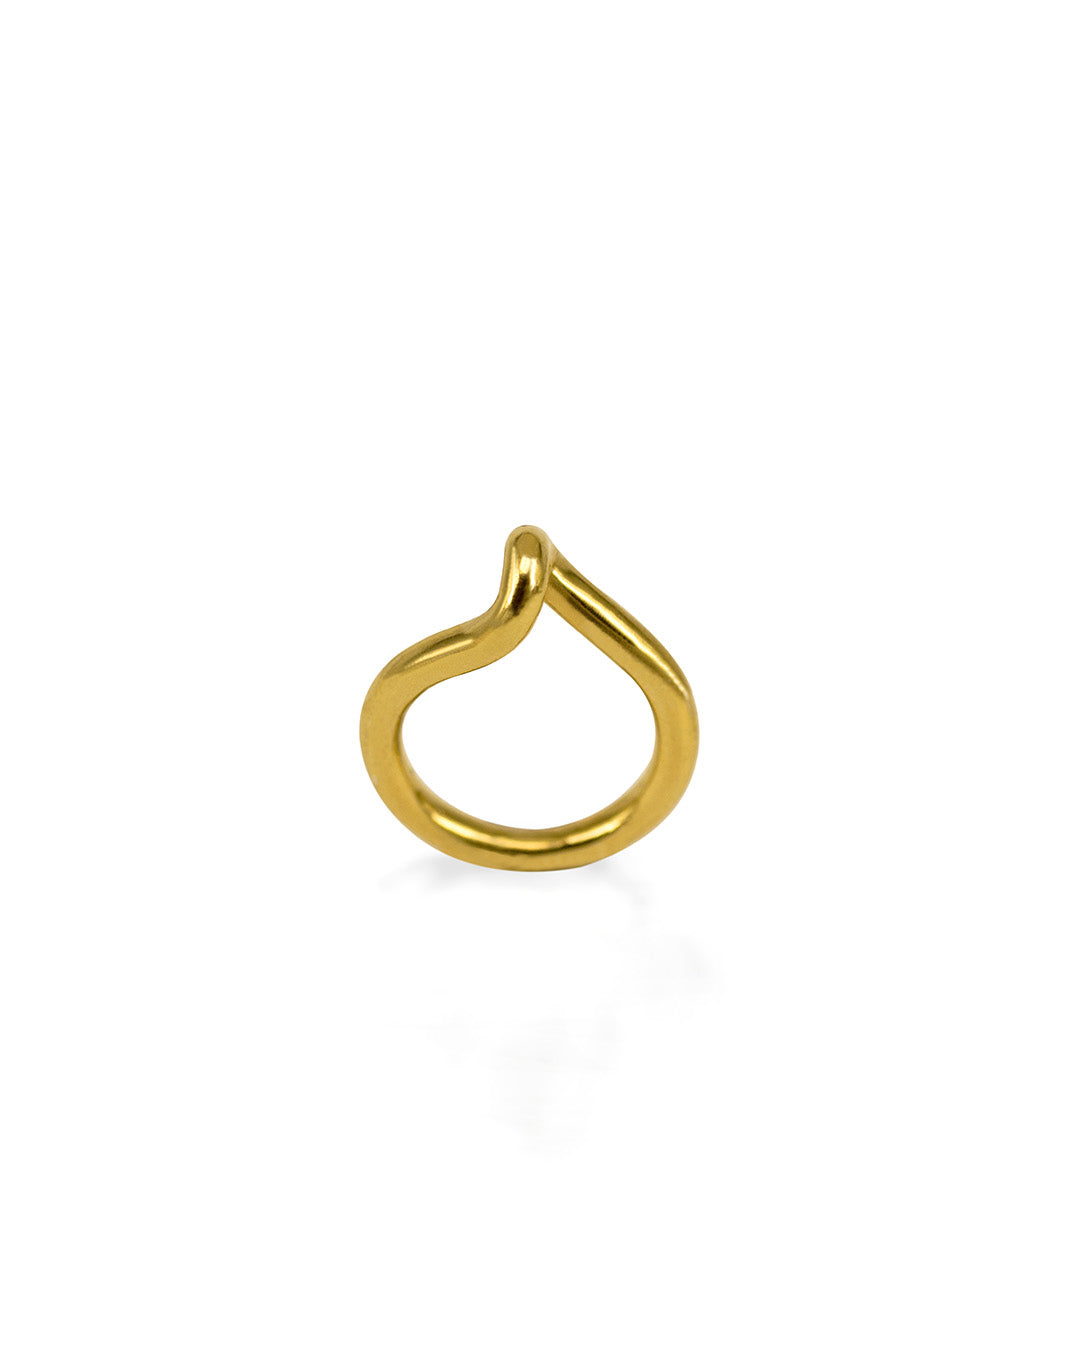 MECAROLA Stacked Ring